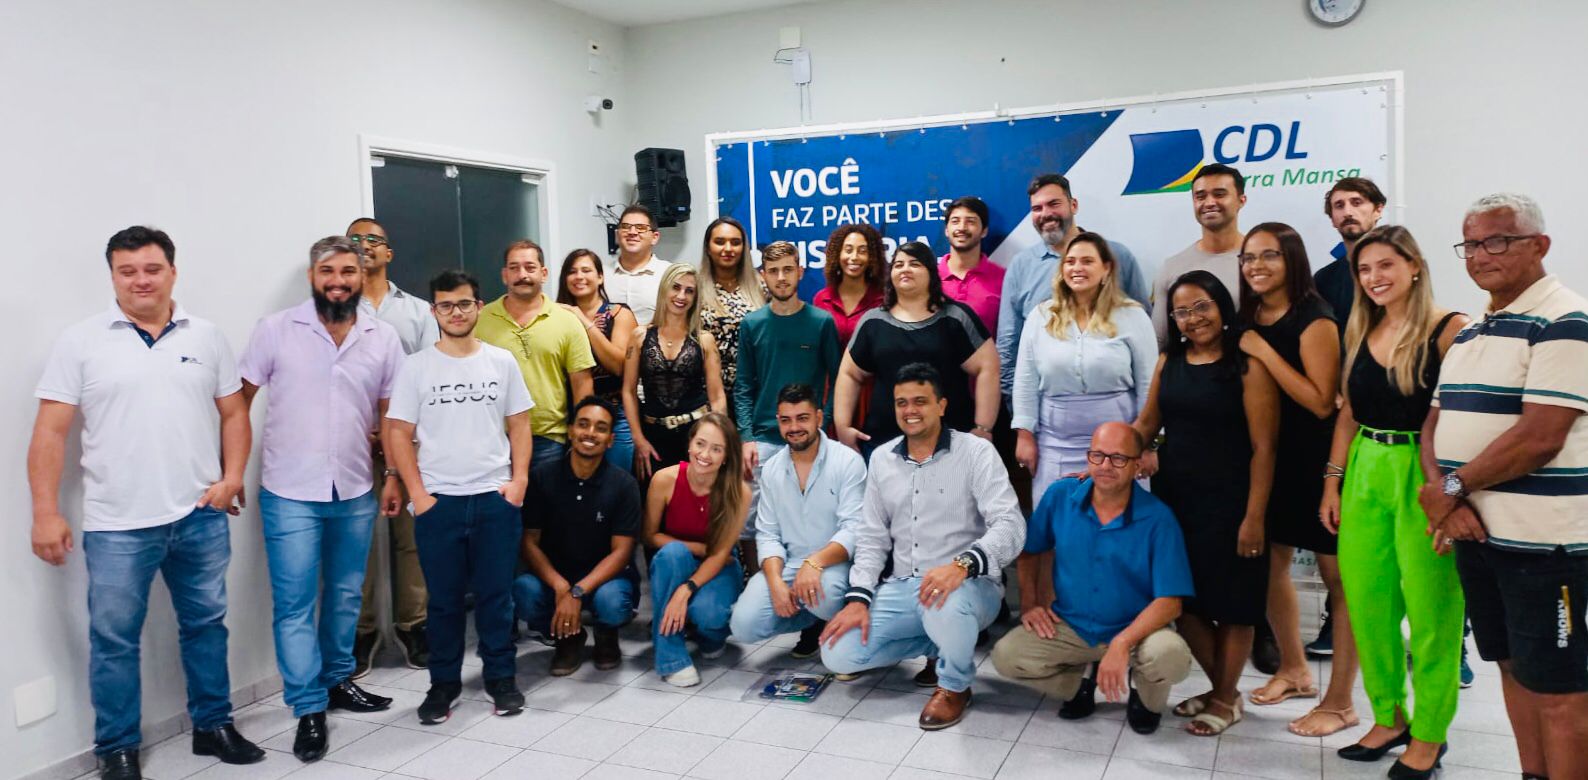 Foto - CDL Jovem de Barra Mansa completa 25 anos e convida jovens empresários para o grupo